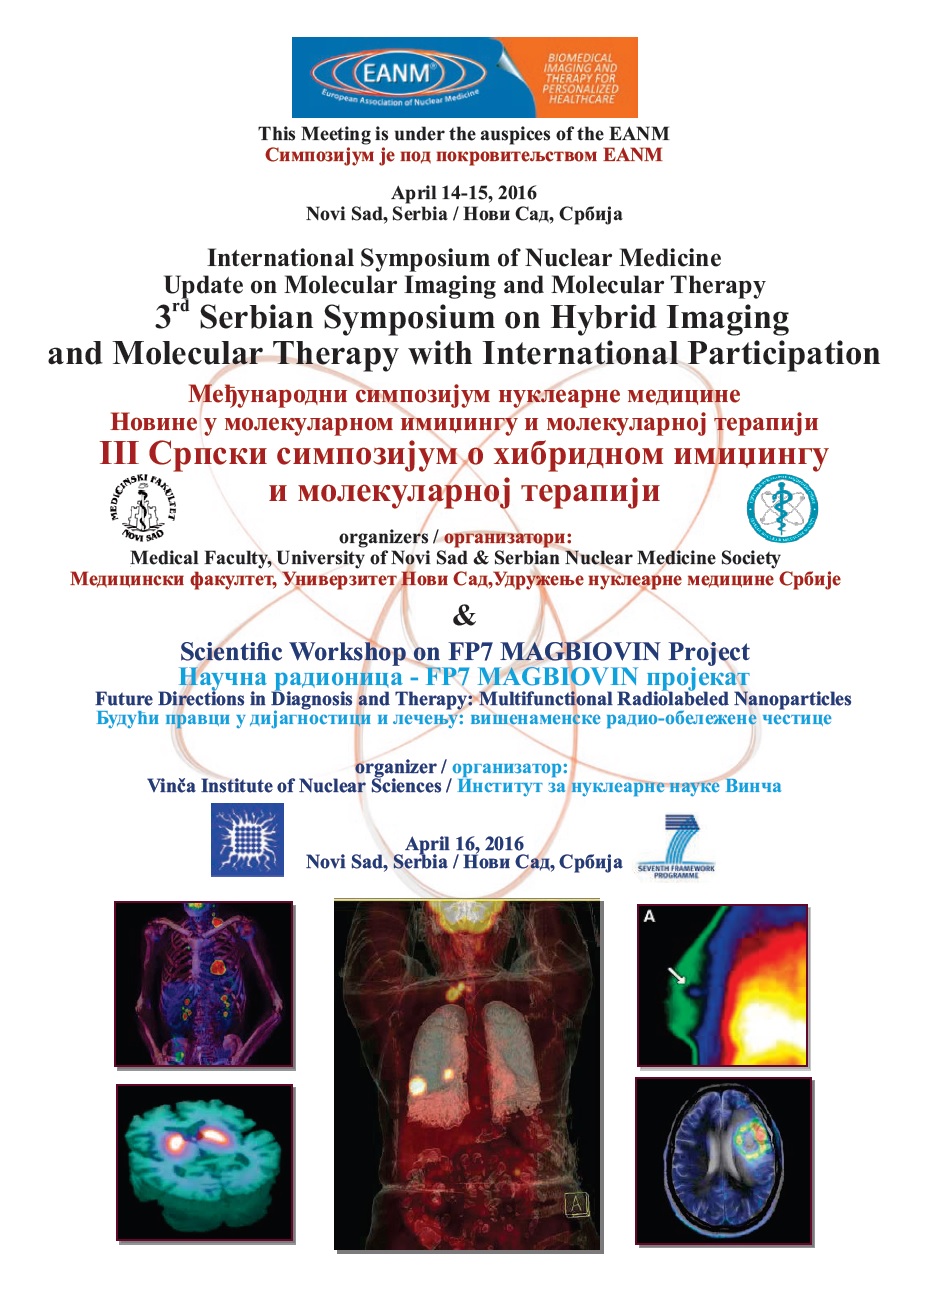 Međunarodni simpozijum Nuklearne medicine i III Srpski simpozijum o hibridnom imidžingu i molekularnoj terapiji